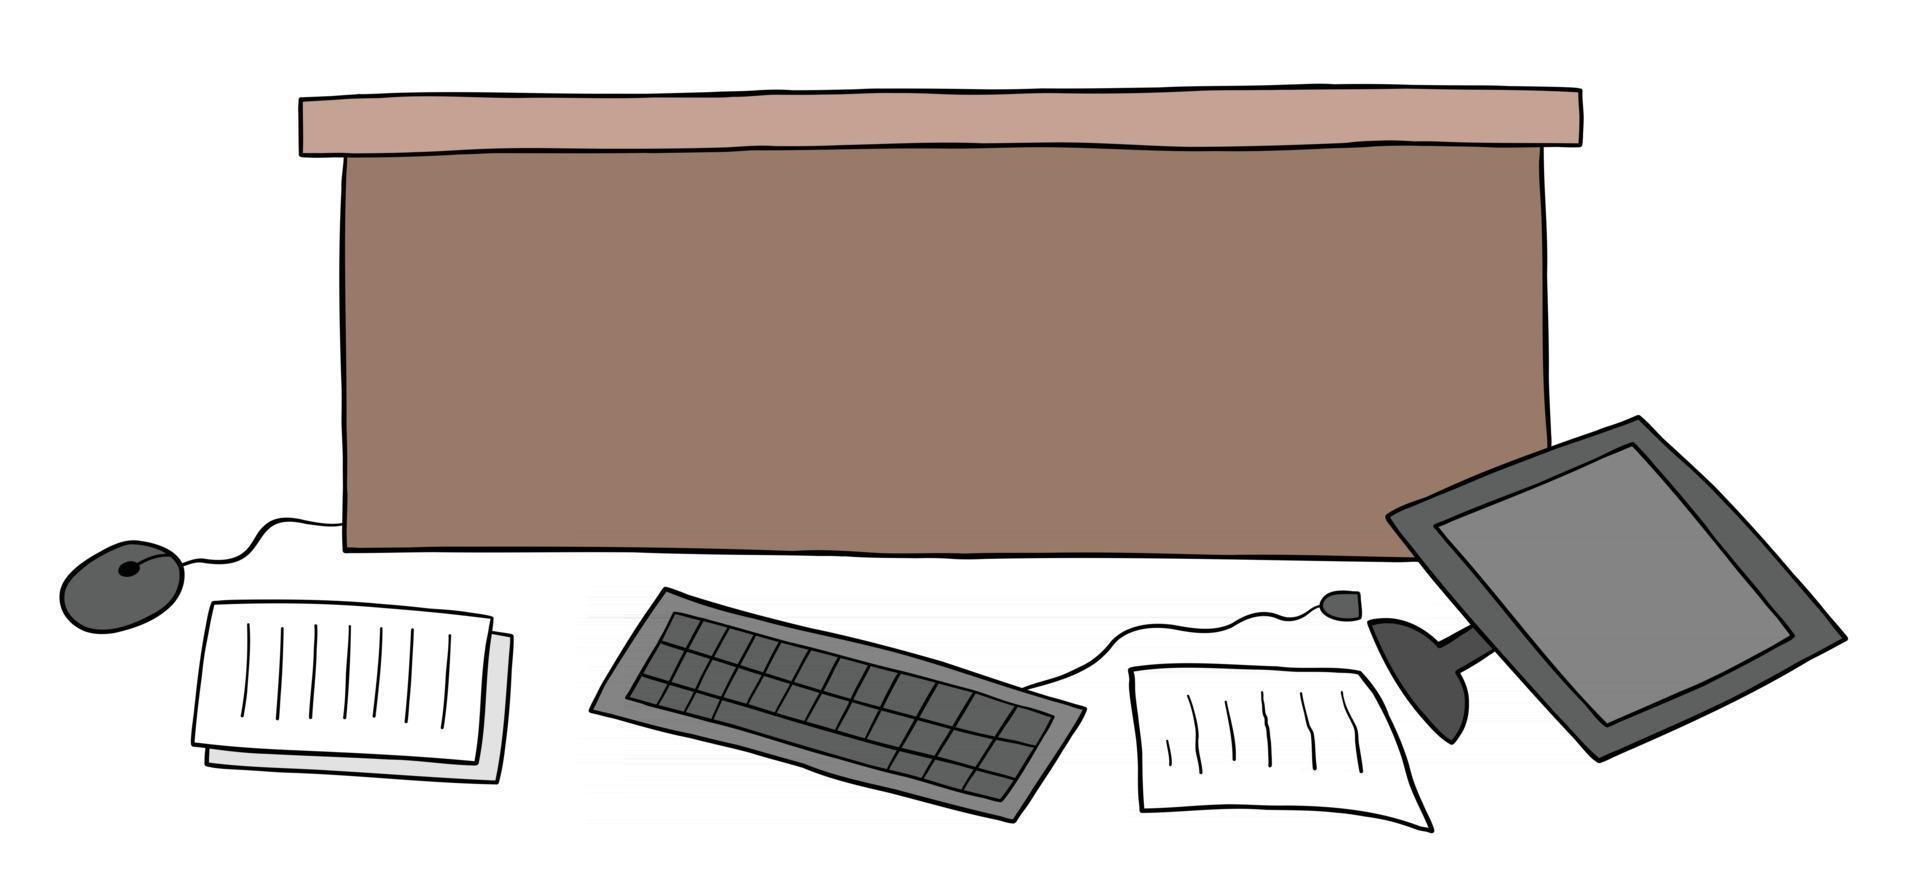 Cartoon-Vektor-Illustration von unordentlichen Schreibtischcomputer und Papieren auf dem Boden vektor